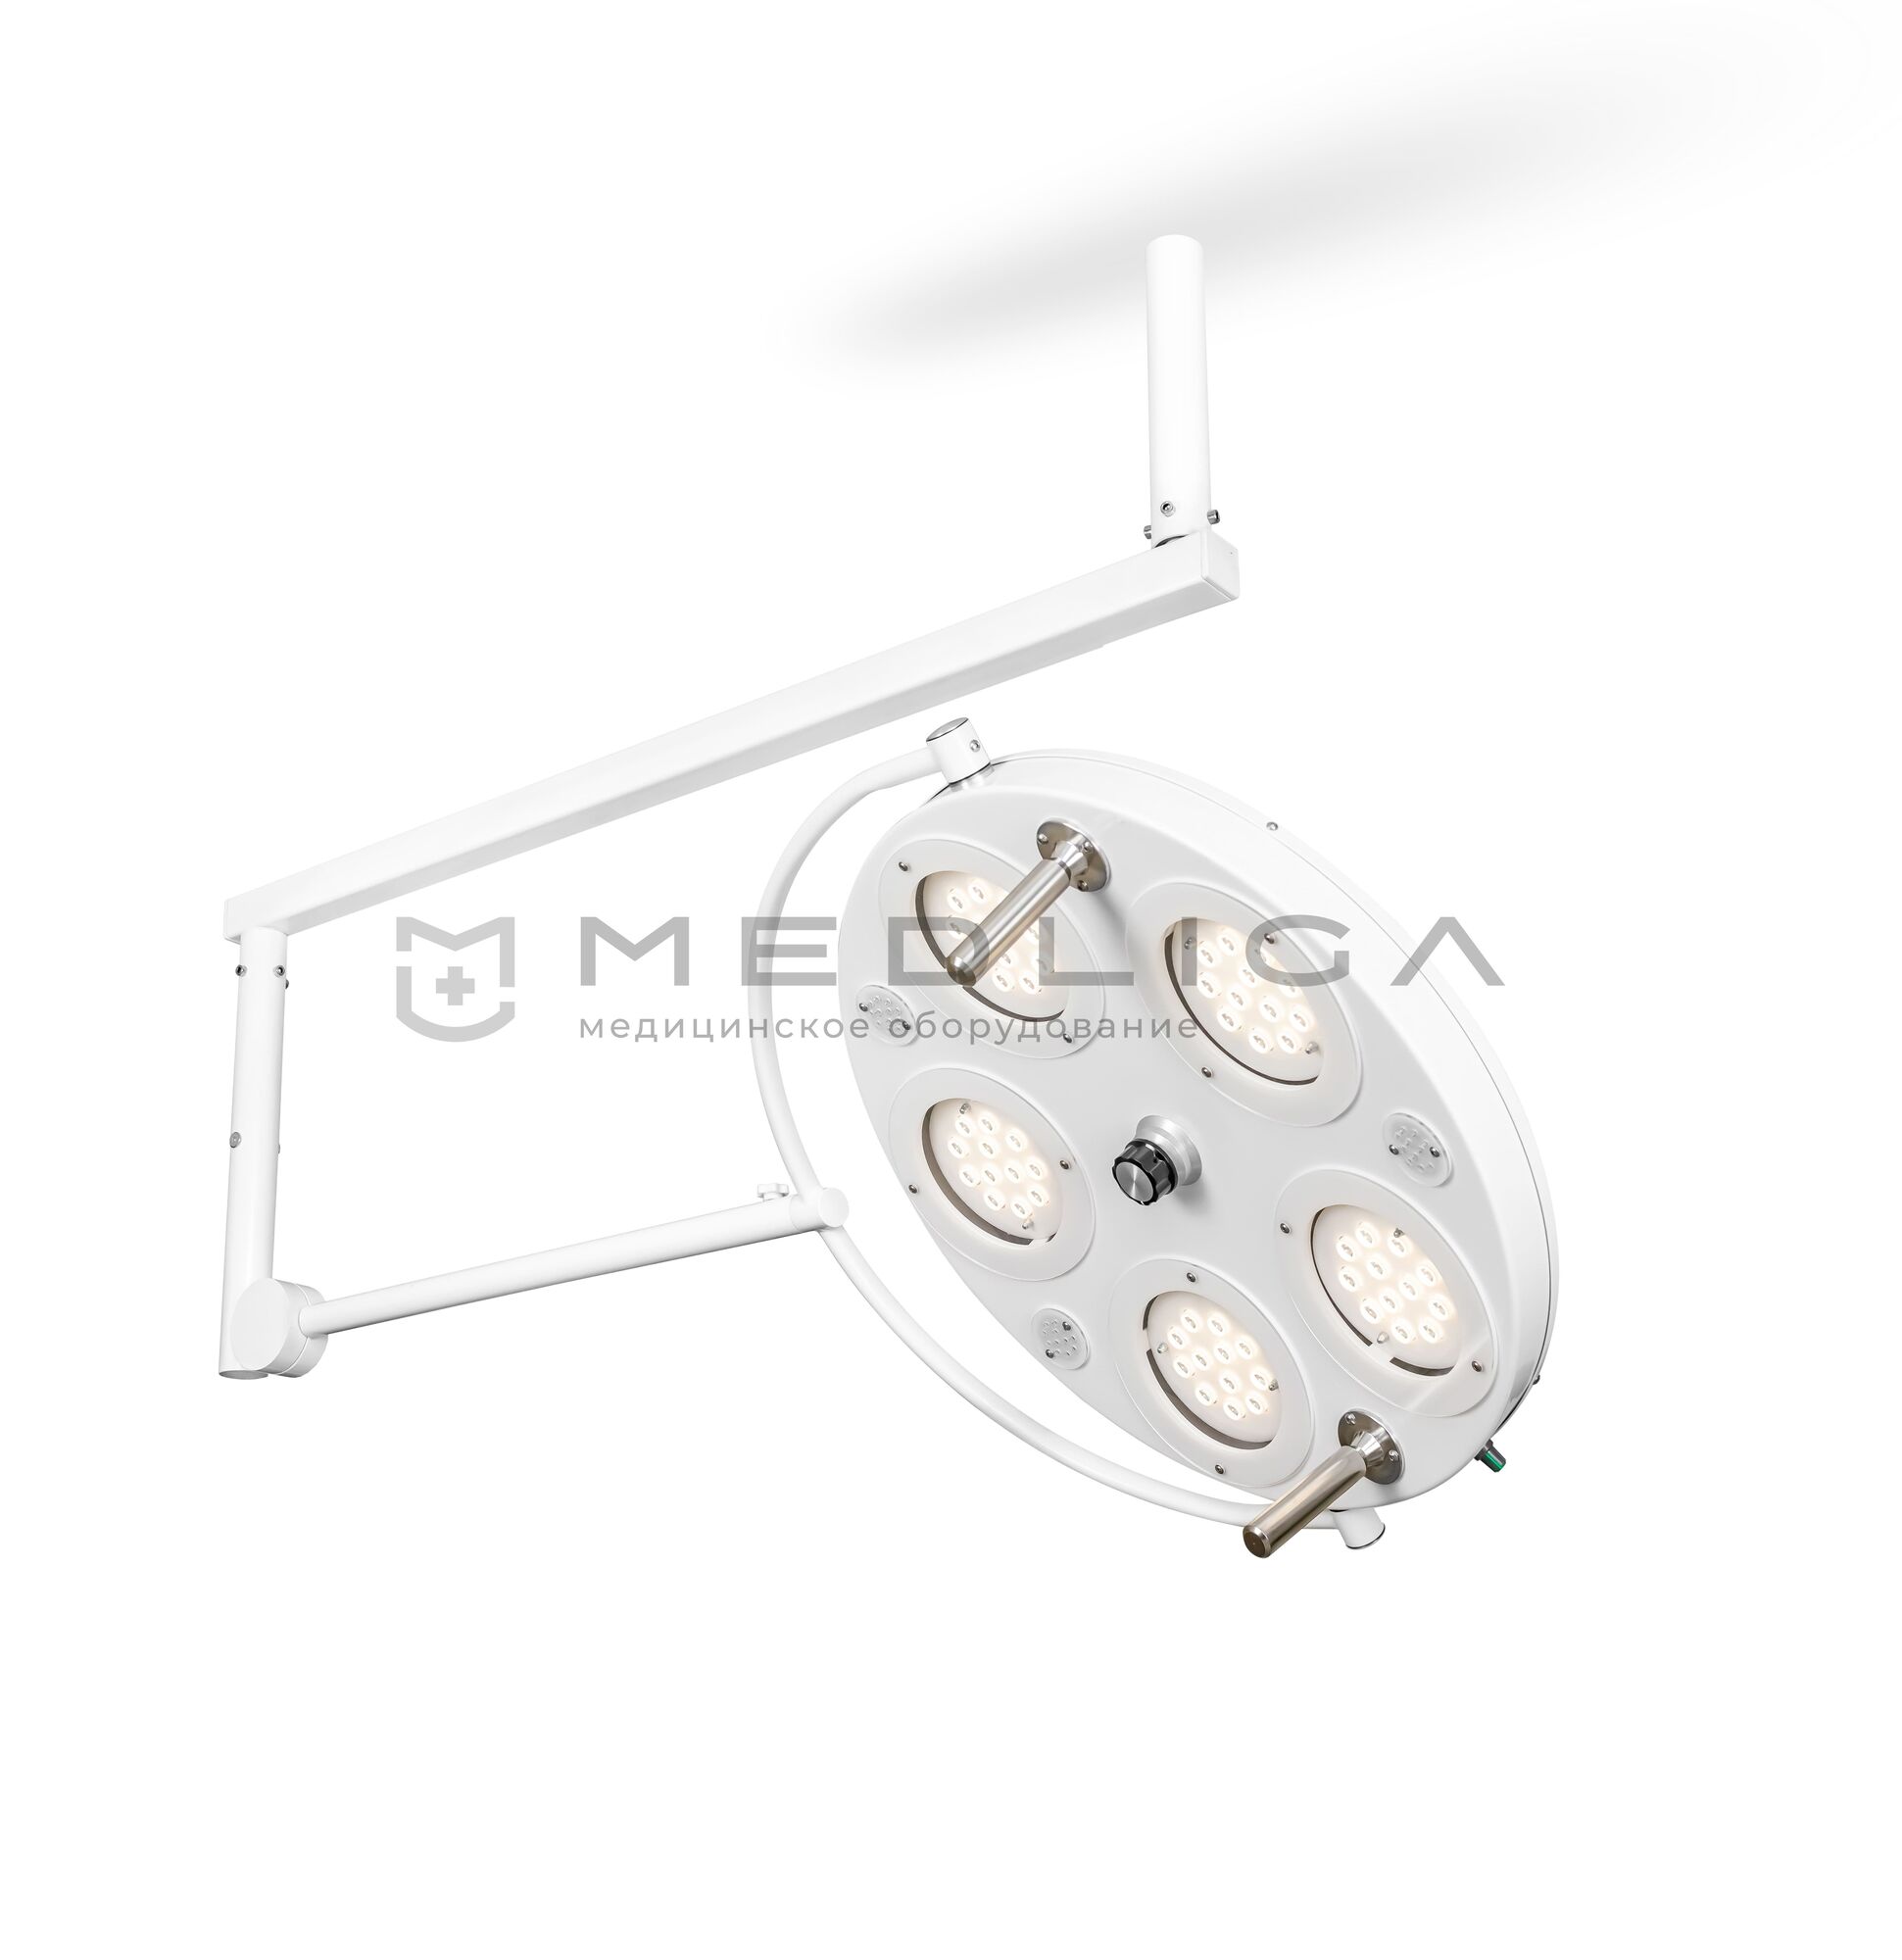 Медицинский хирургический светильник FotonFly 5C